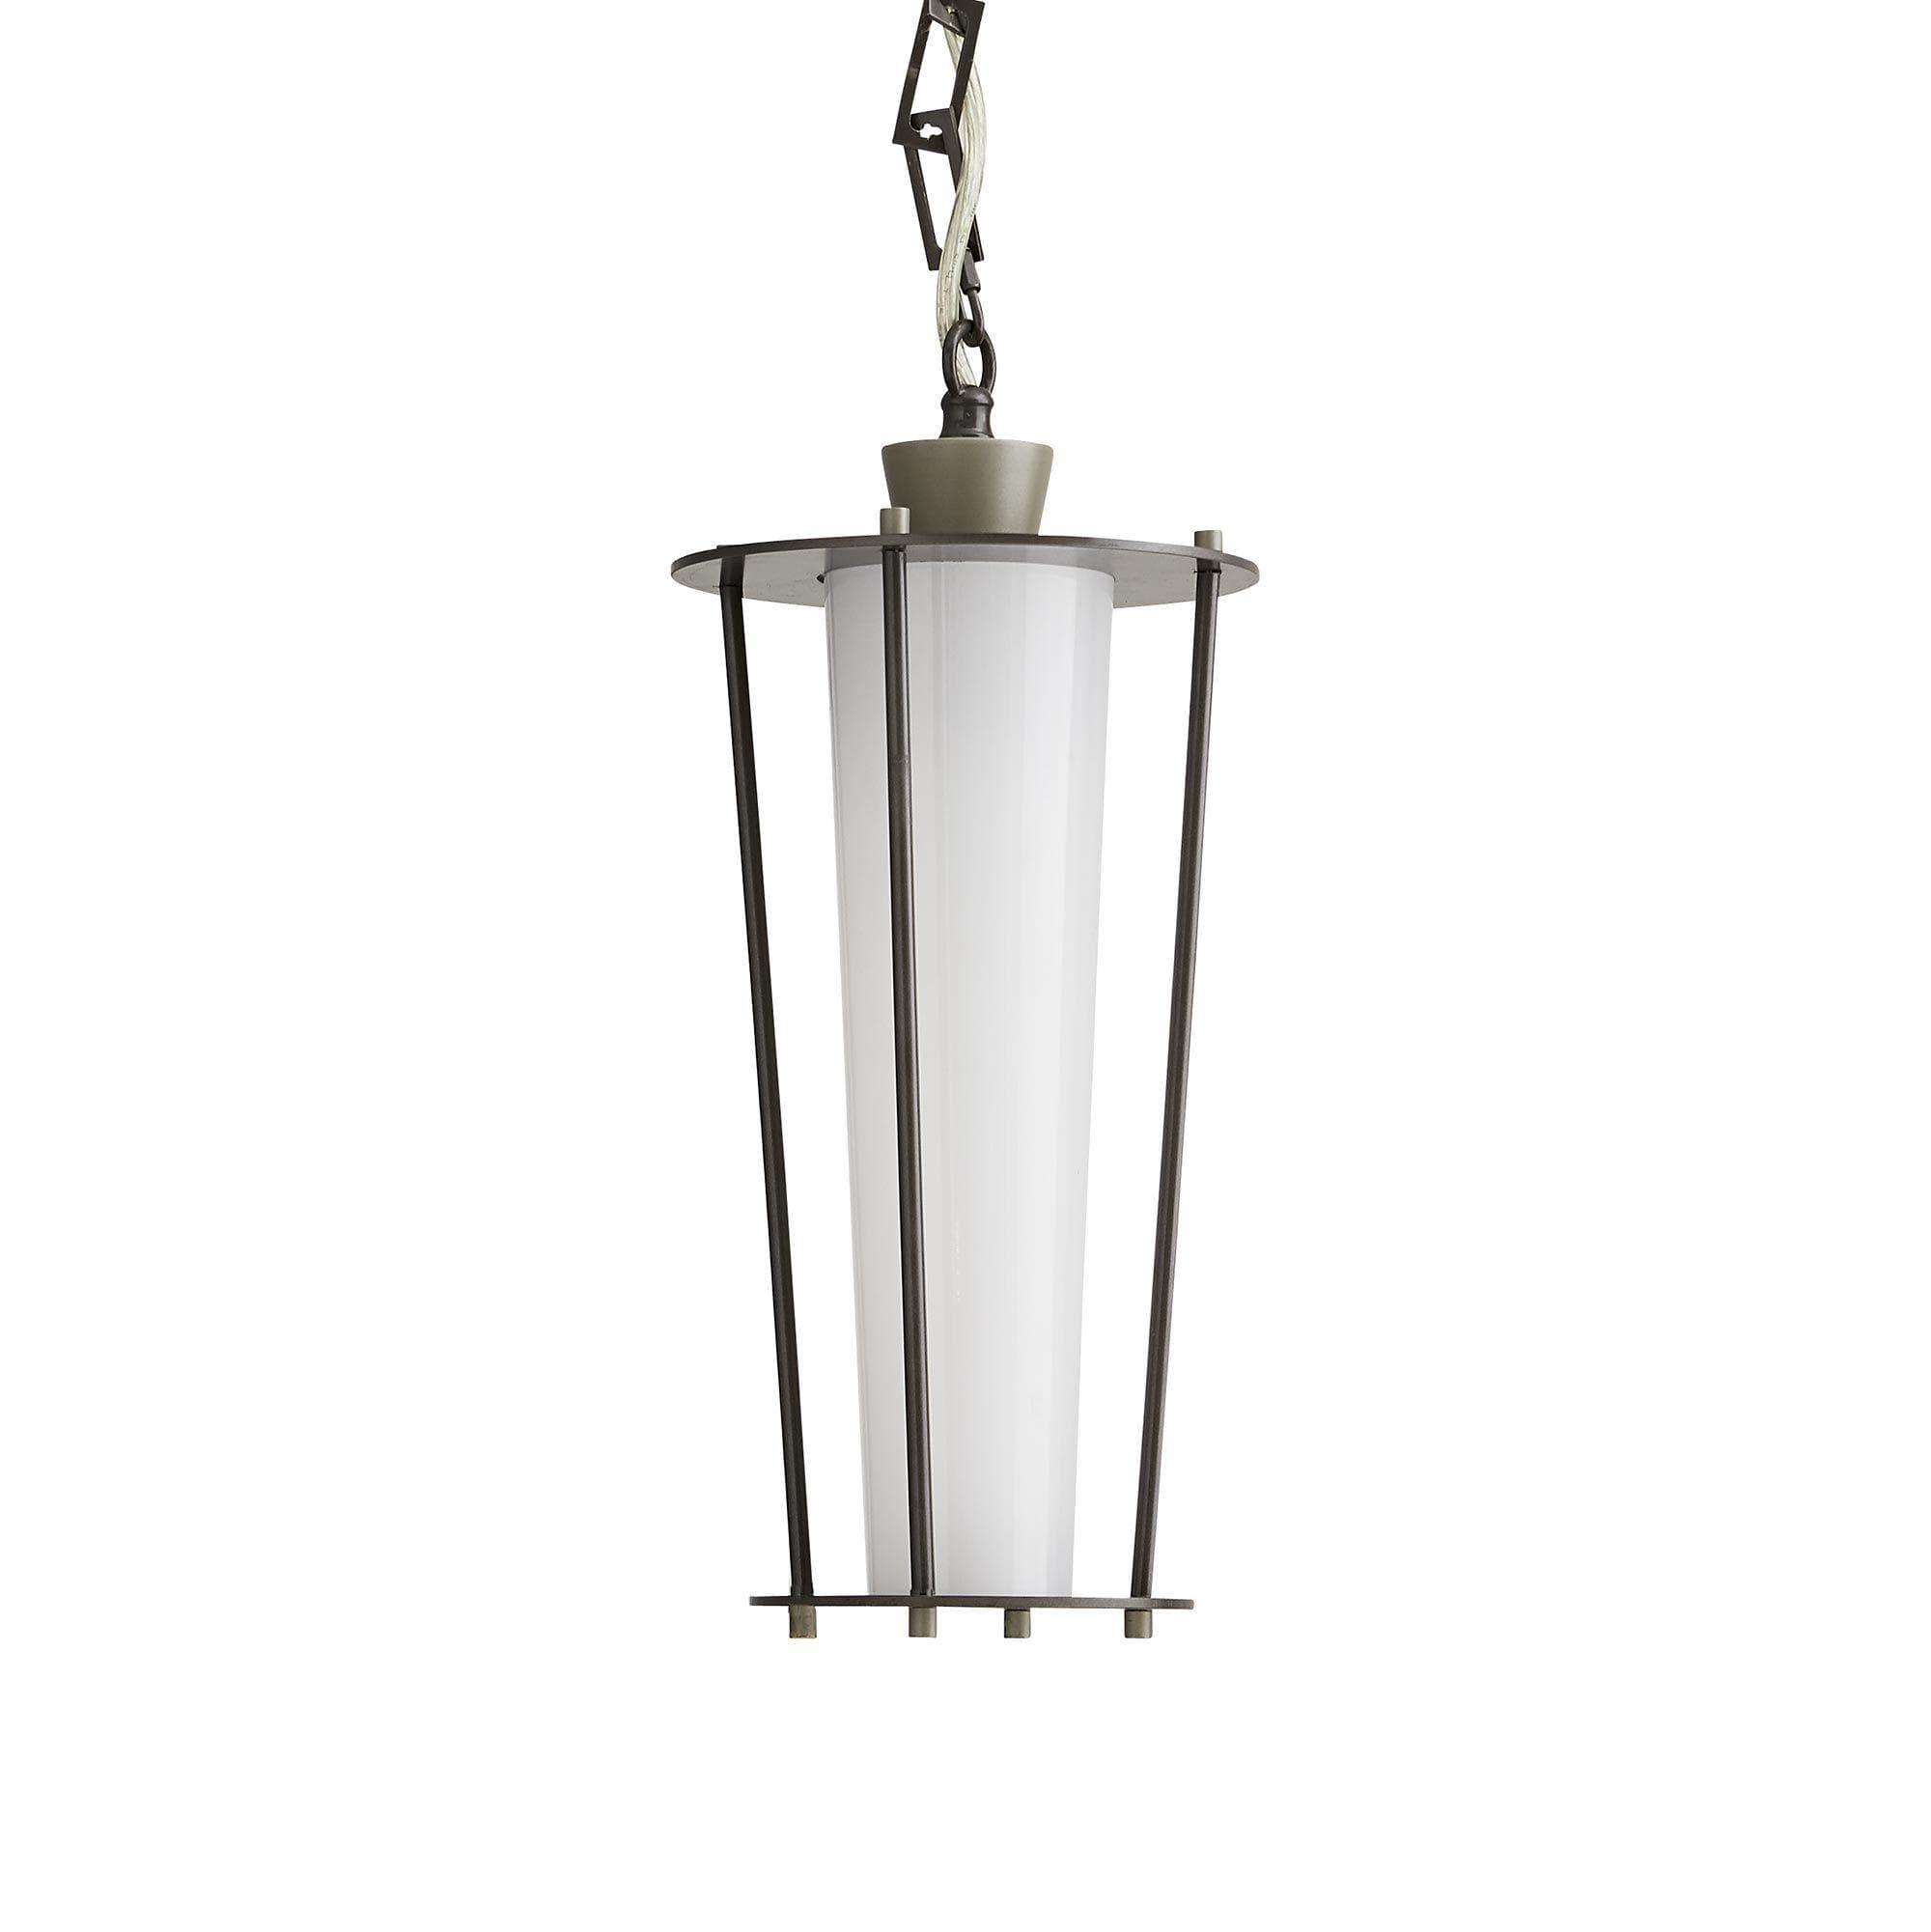 Купить Подвесной светильник/Подвесной светильник для улицы Sorel Outdoor Pendant в интернет-магазине roooms.ru